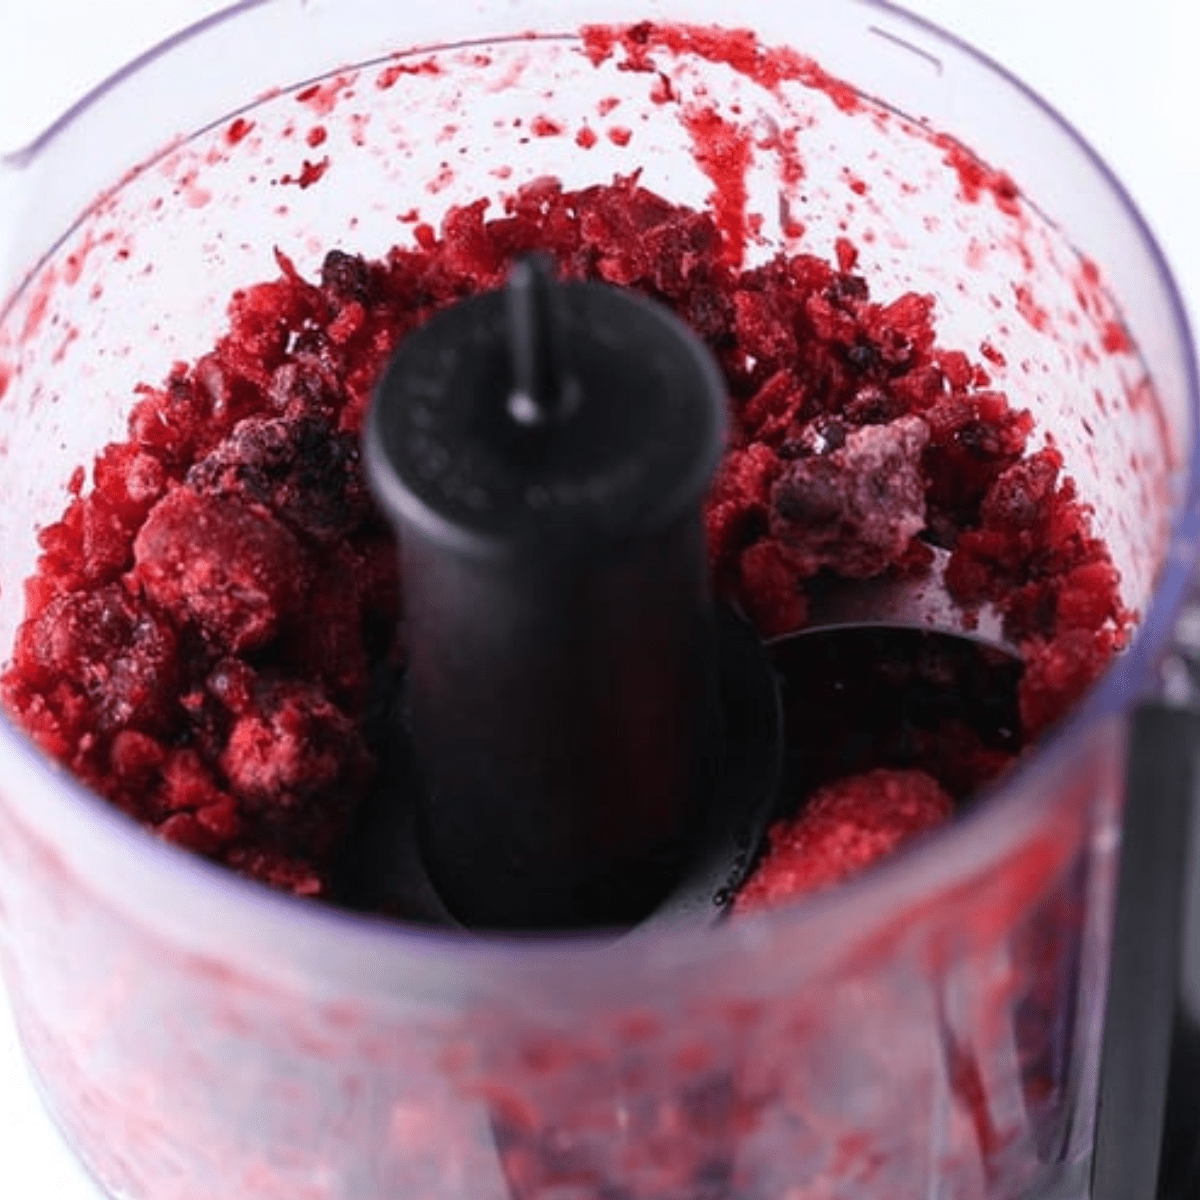 frozen berries in food processor